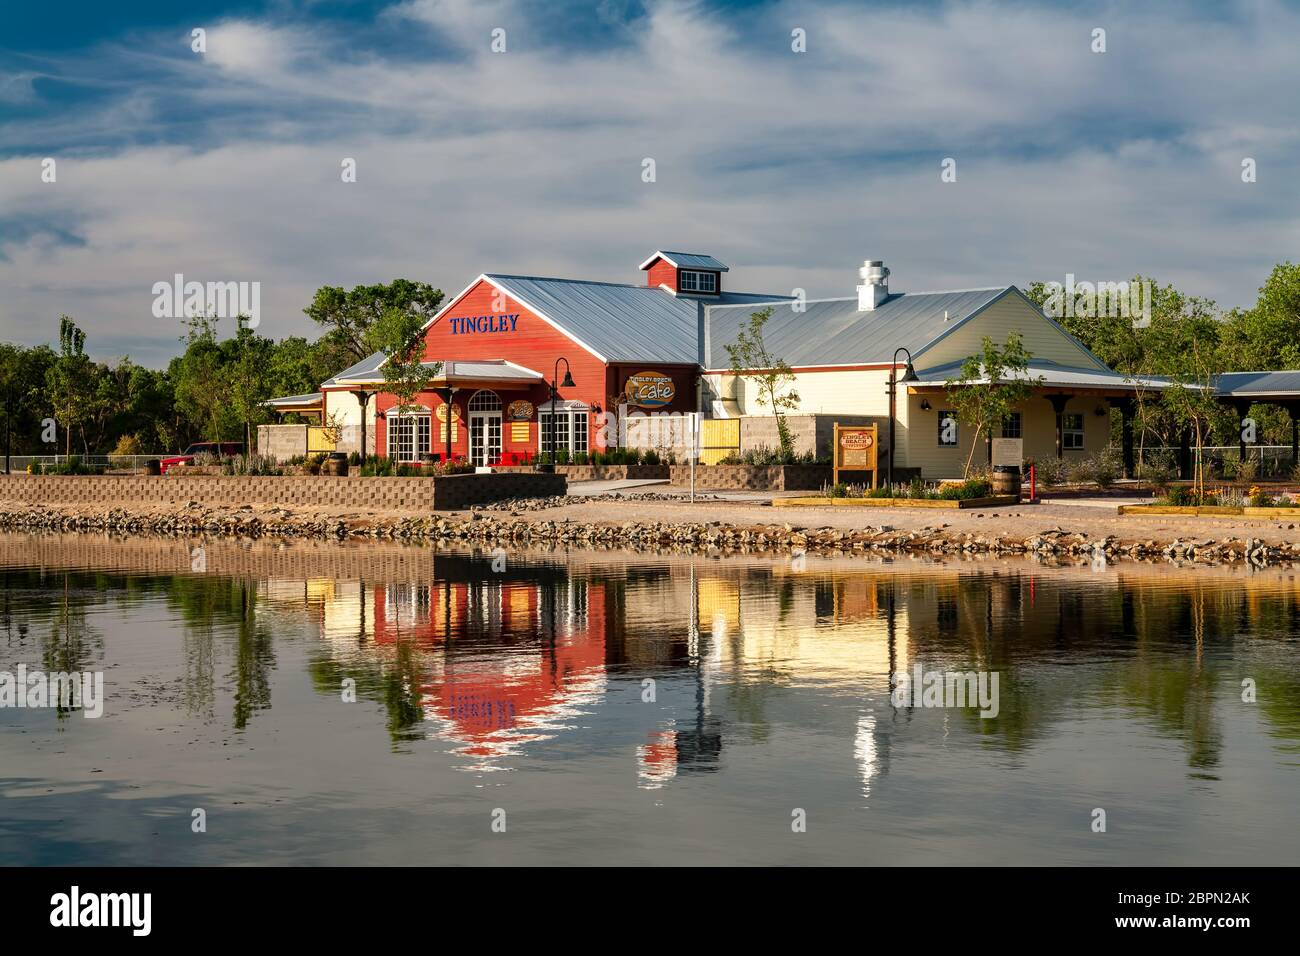 Gare et café et étang, Tingley Beach, Albuquerque, Nouveau-Mexique, États-Unis Banque D'Images